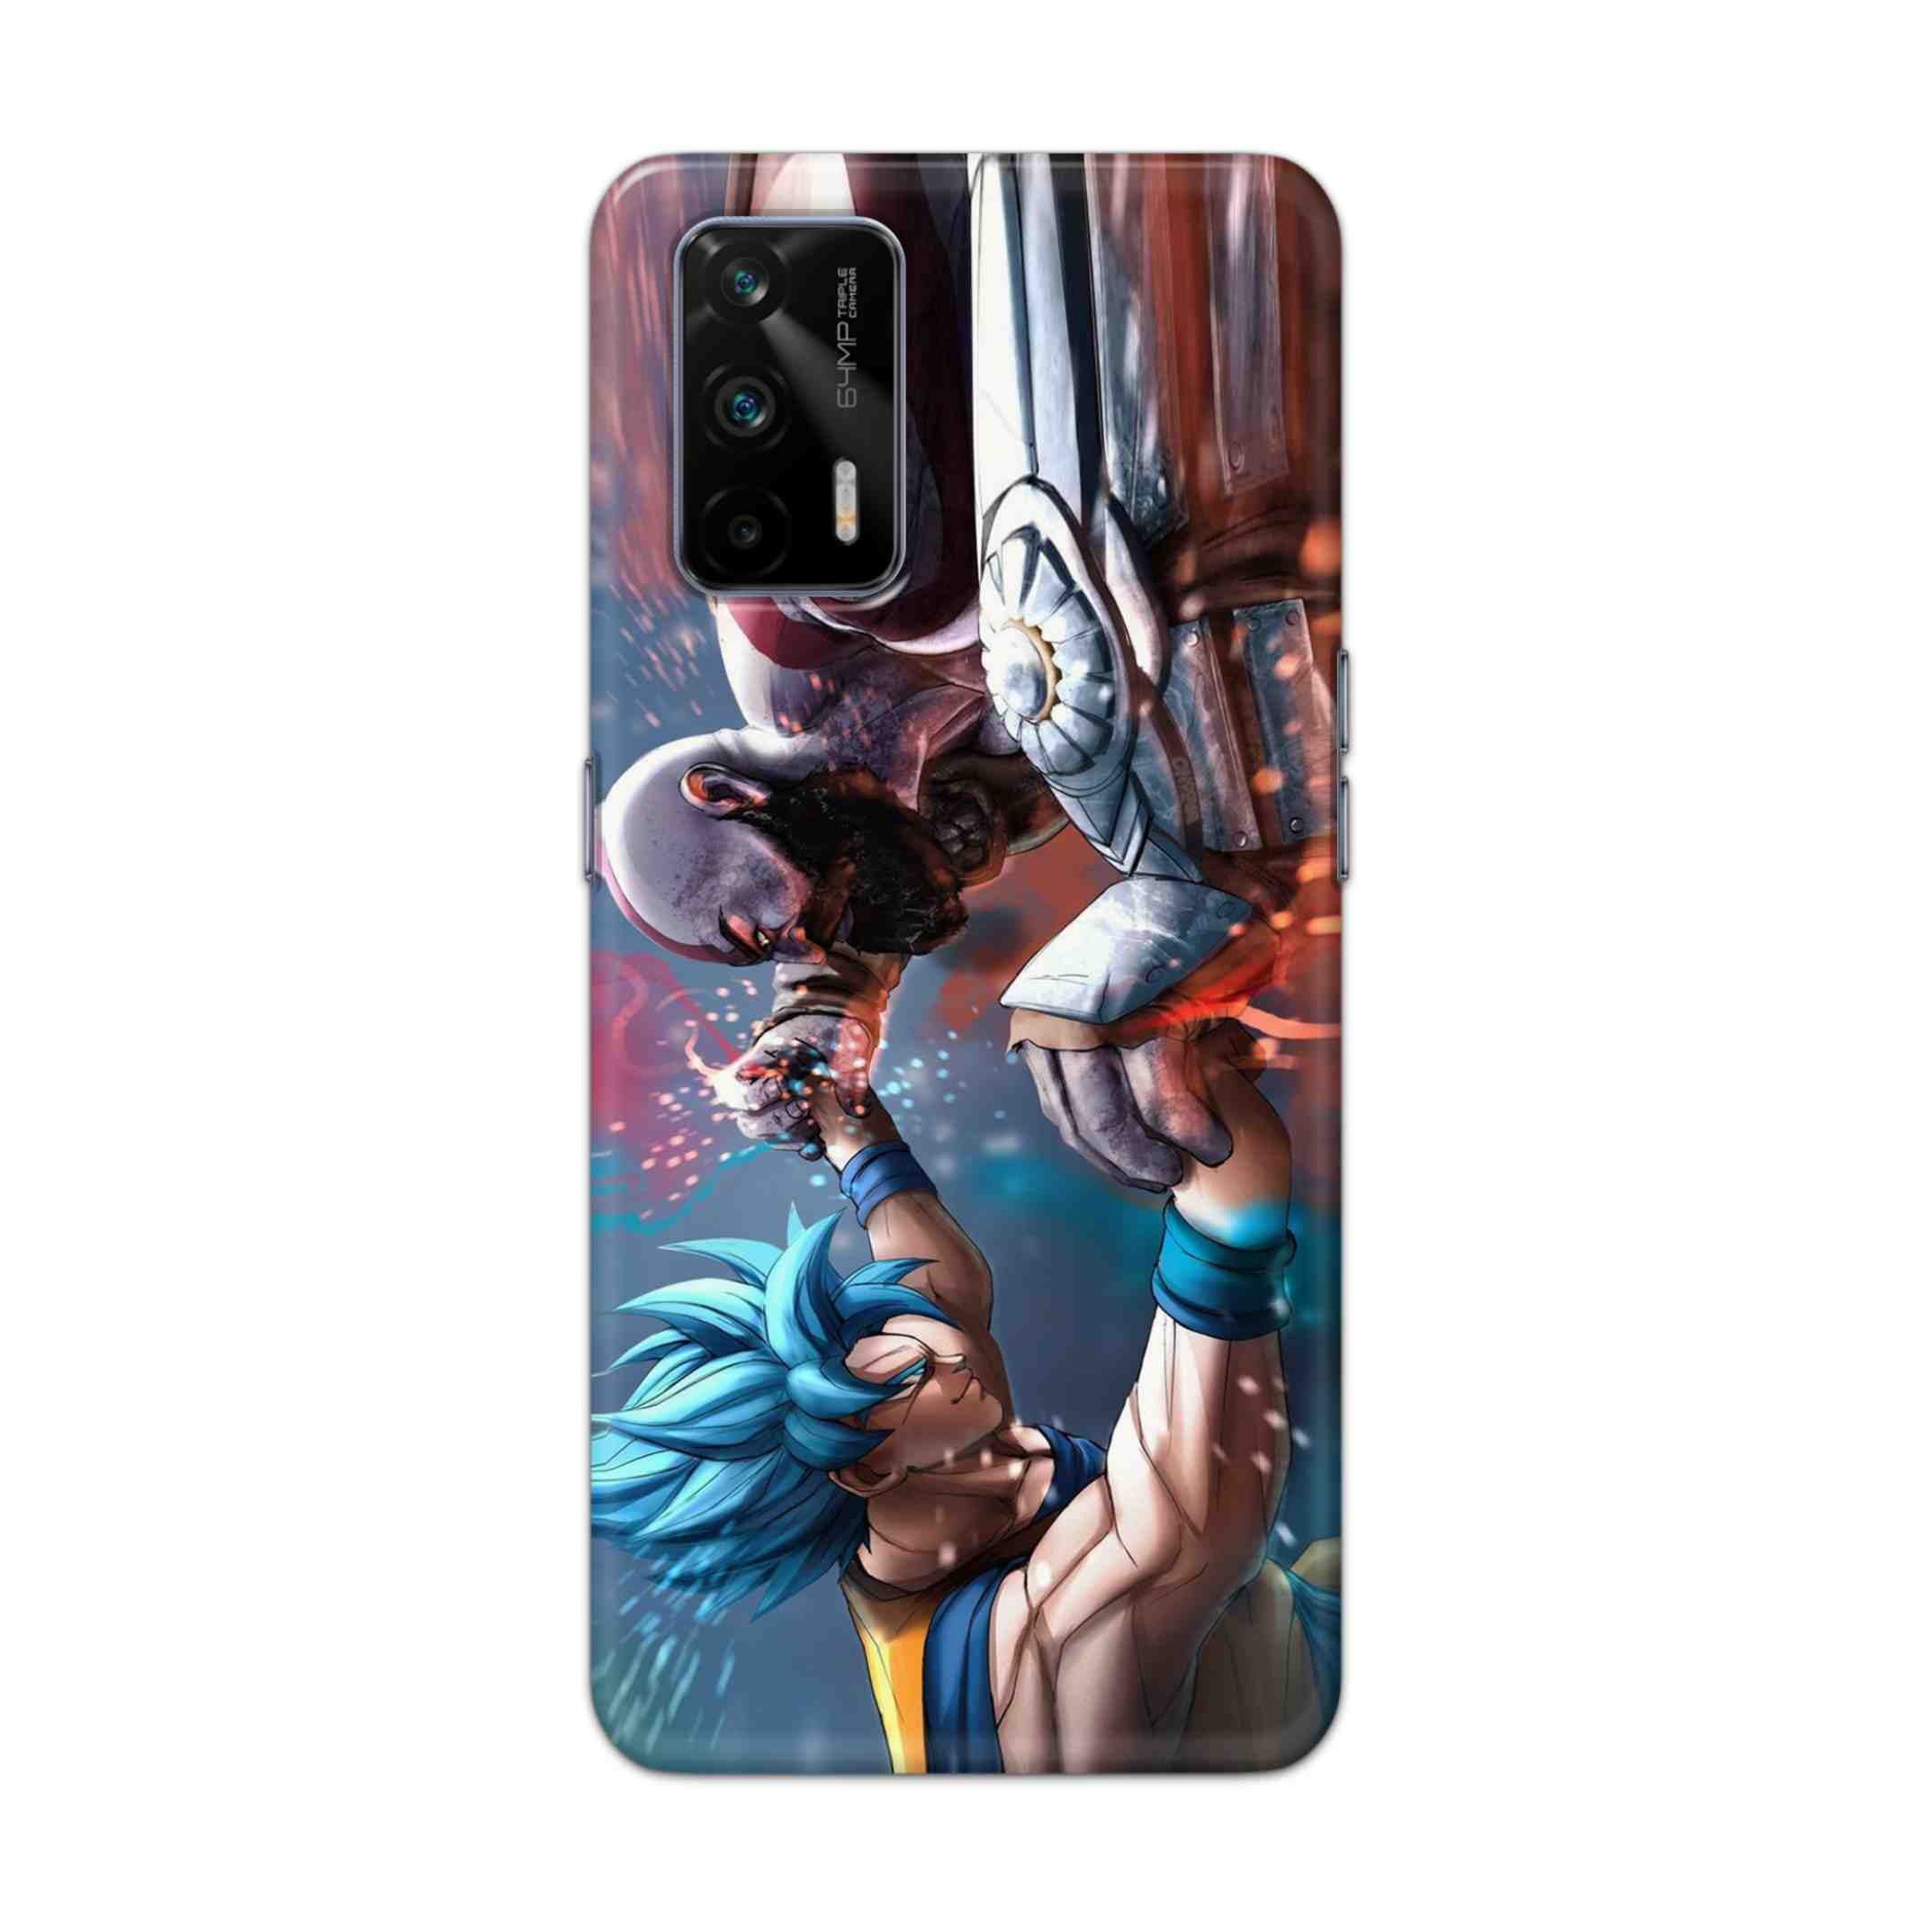 Buy Goku Vs Kratos Hard Back Mobile Phone Case Cover For Realme GT 5G Online